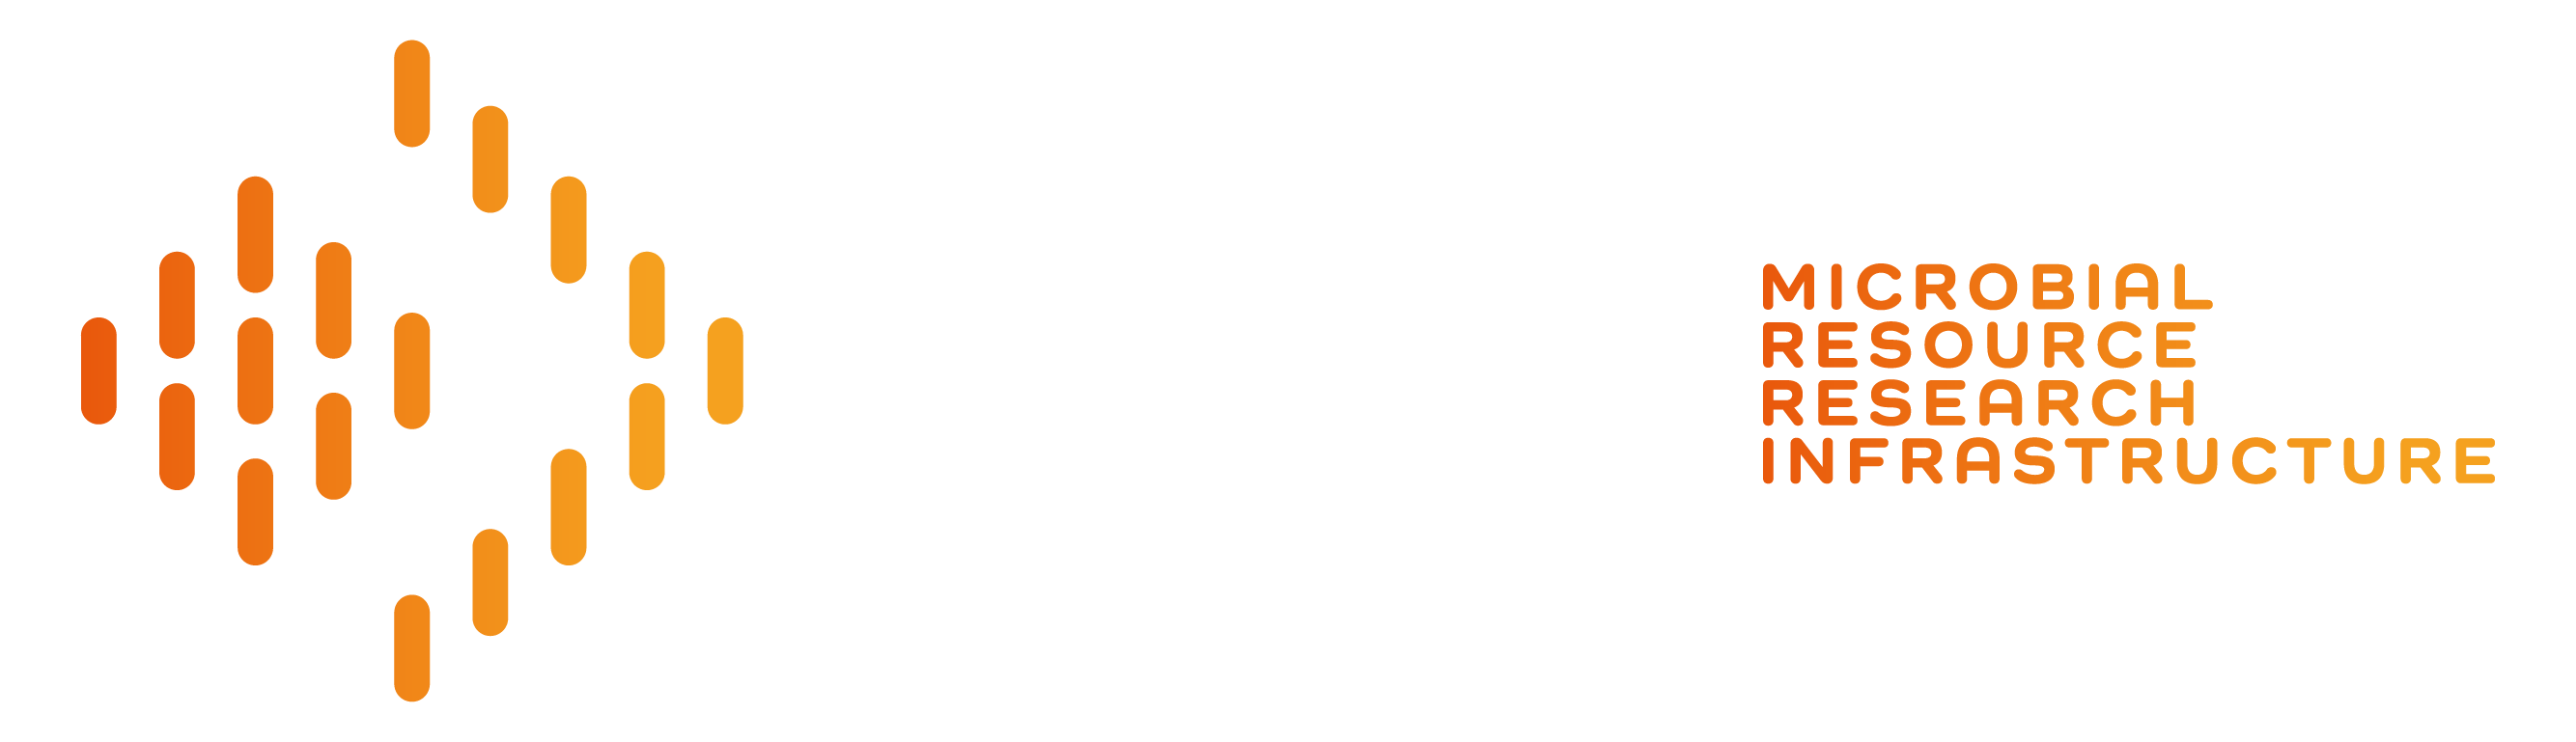 MIRRI-ERIC